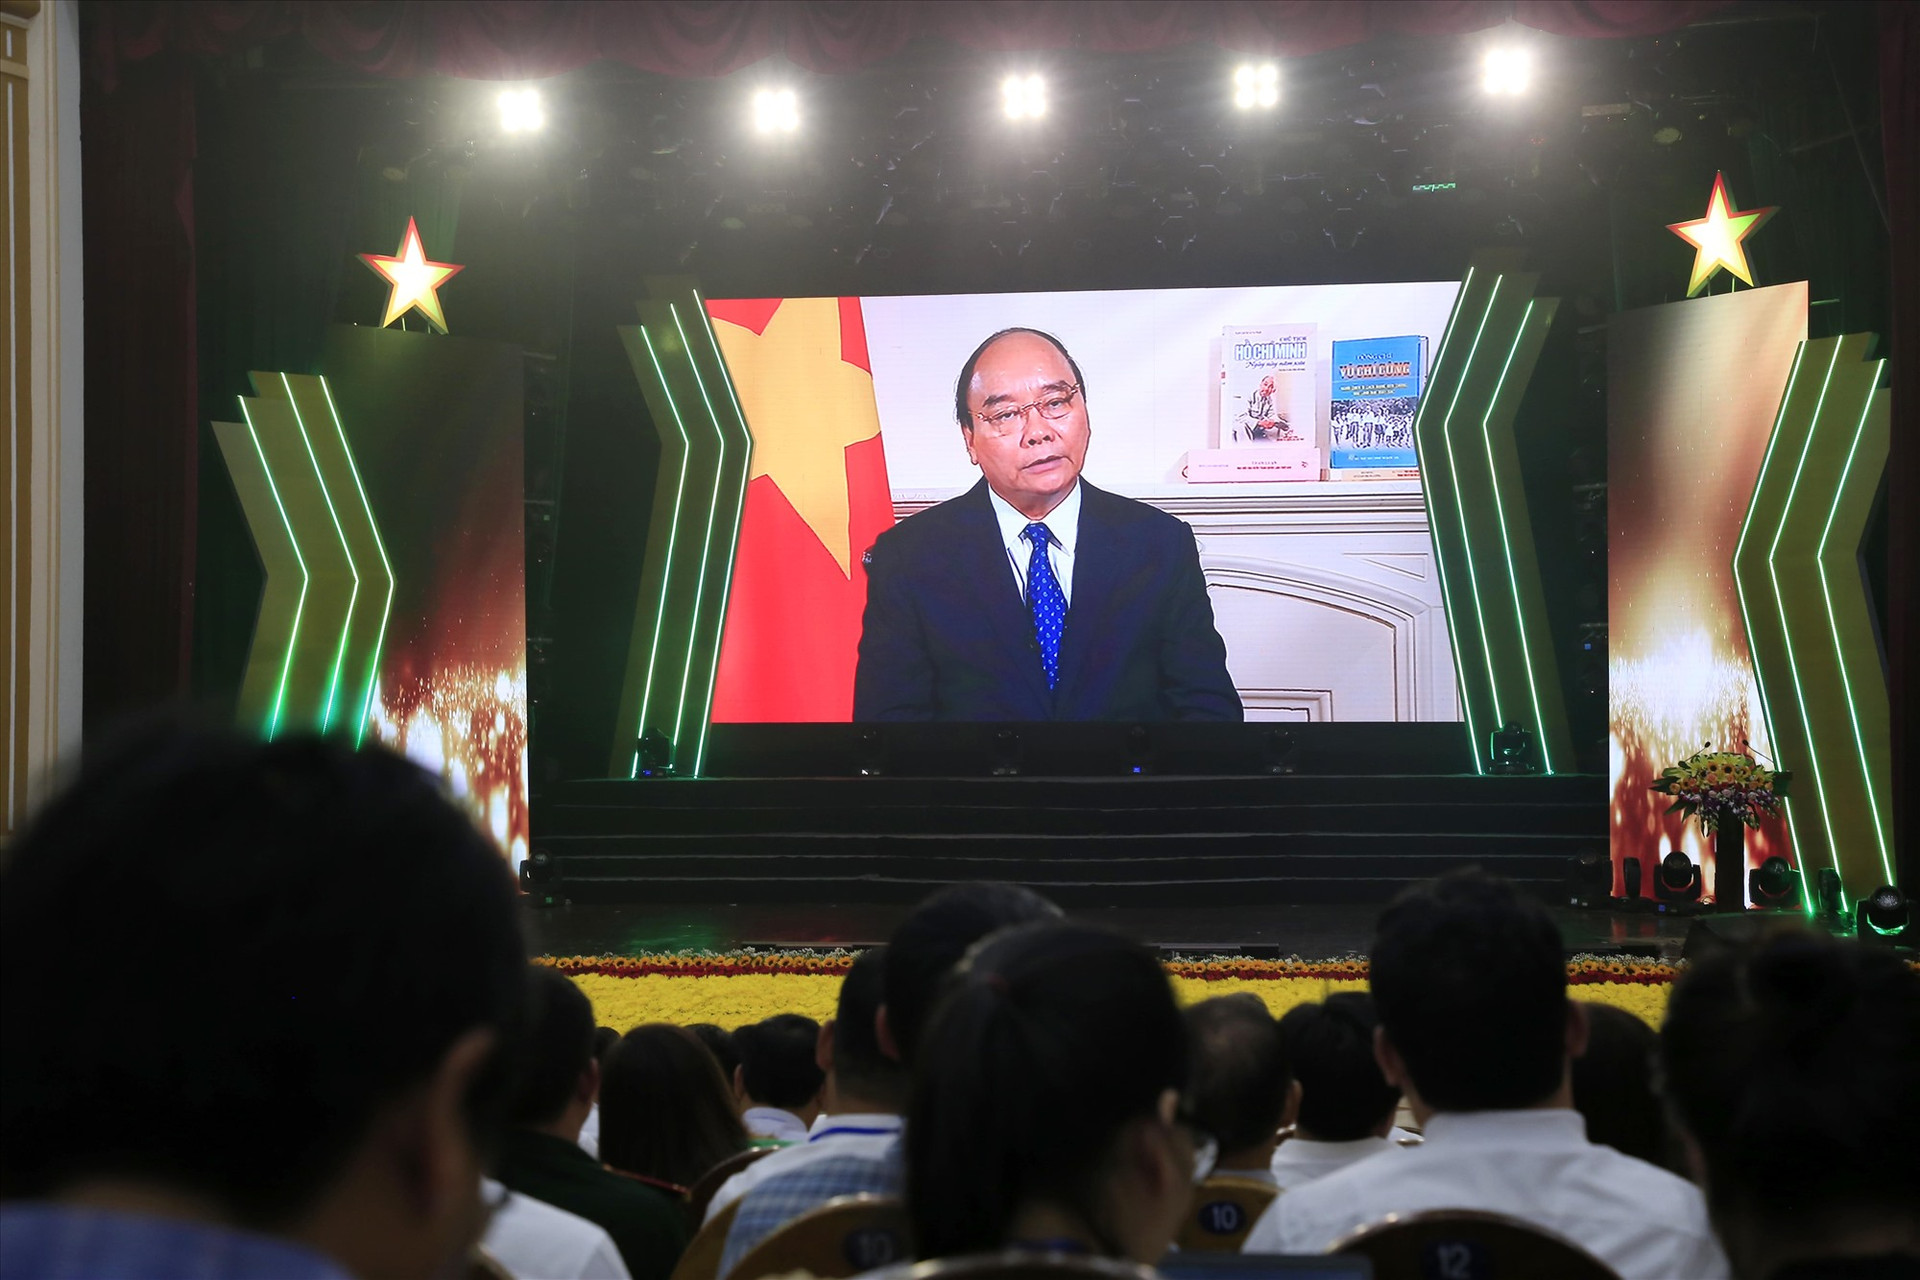 Chủ tịch nước Nguyễn Xuân Phúc phát biểu về đồng chí Võ Chí Công trong phân đoạn phim tài liệu được phát tại lễ kỷ niệm. Ảnh: P.V